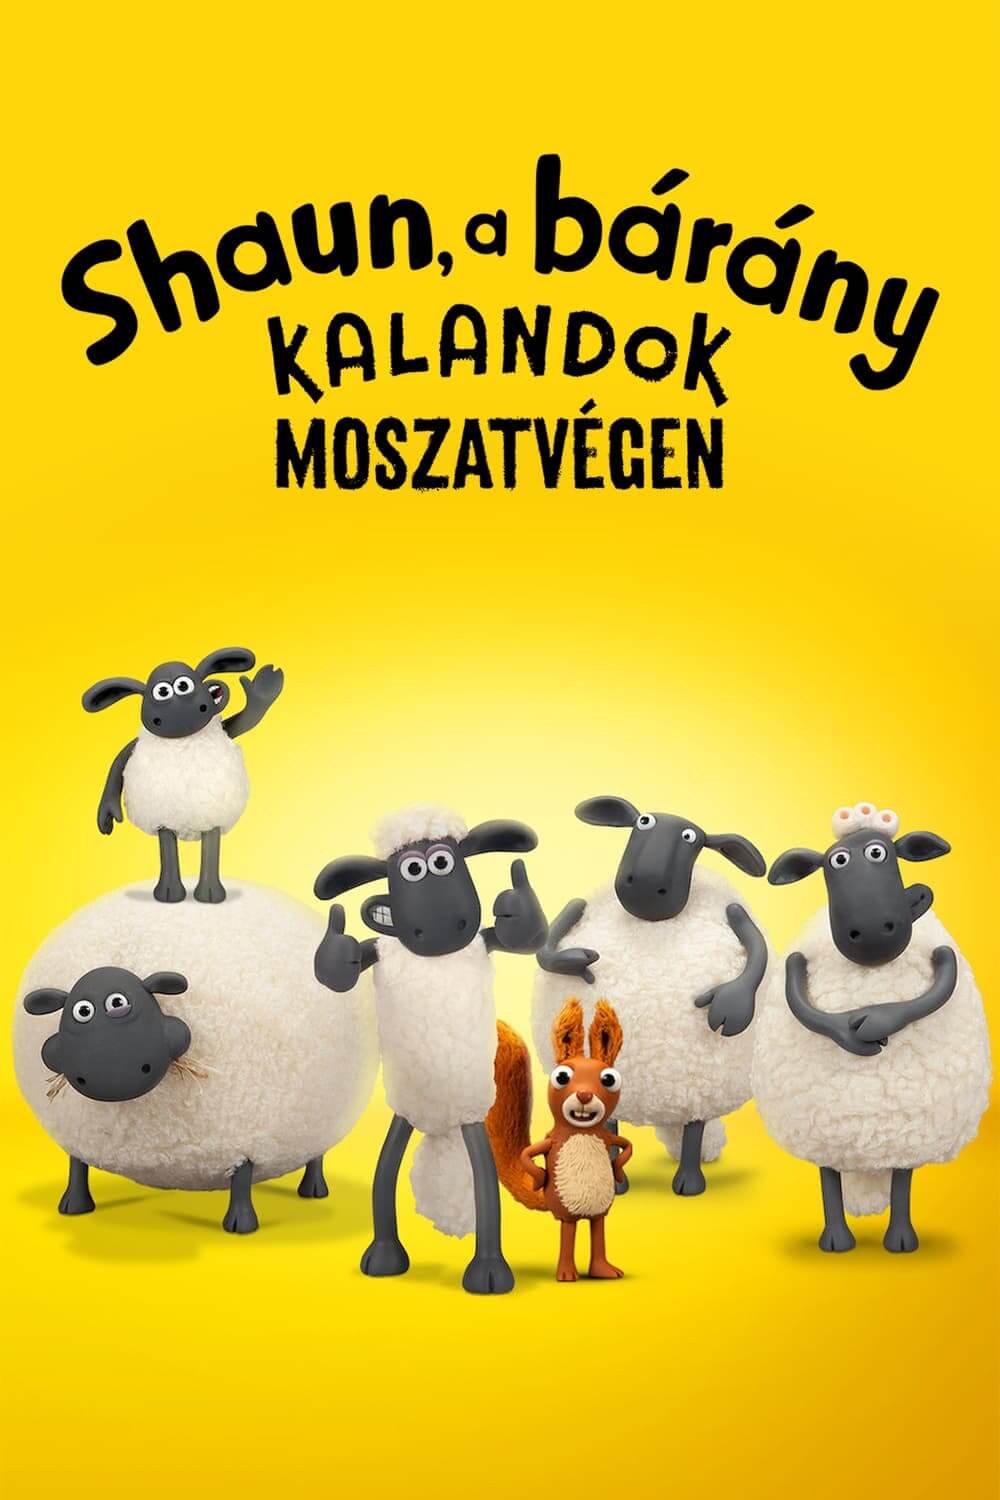 بره ناقلا ماجراهایی از ته باتلاق (Shaun the Sheep: Adventures from Mossy Bottom)